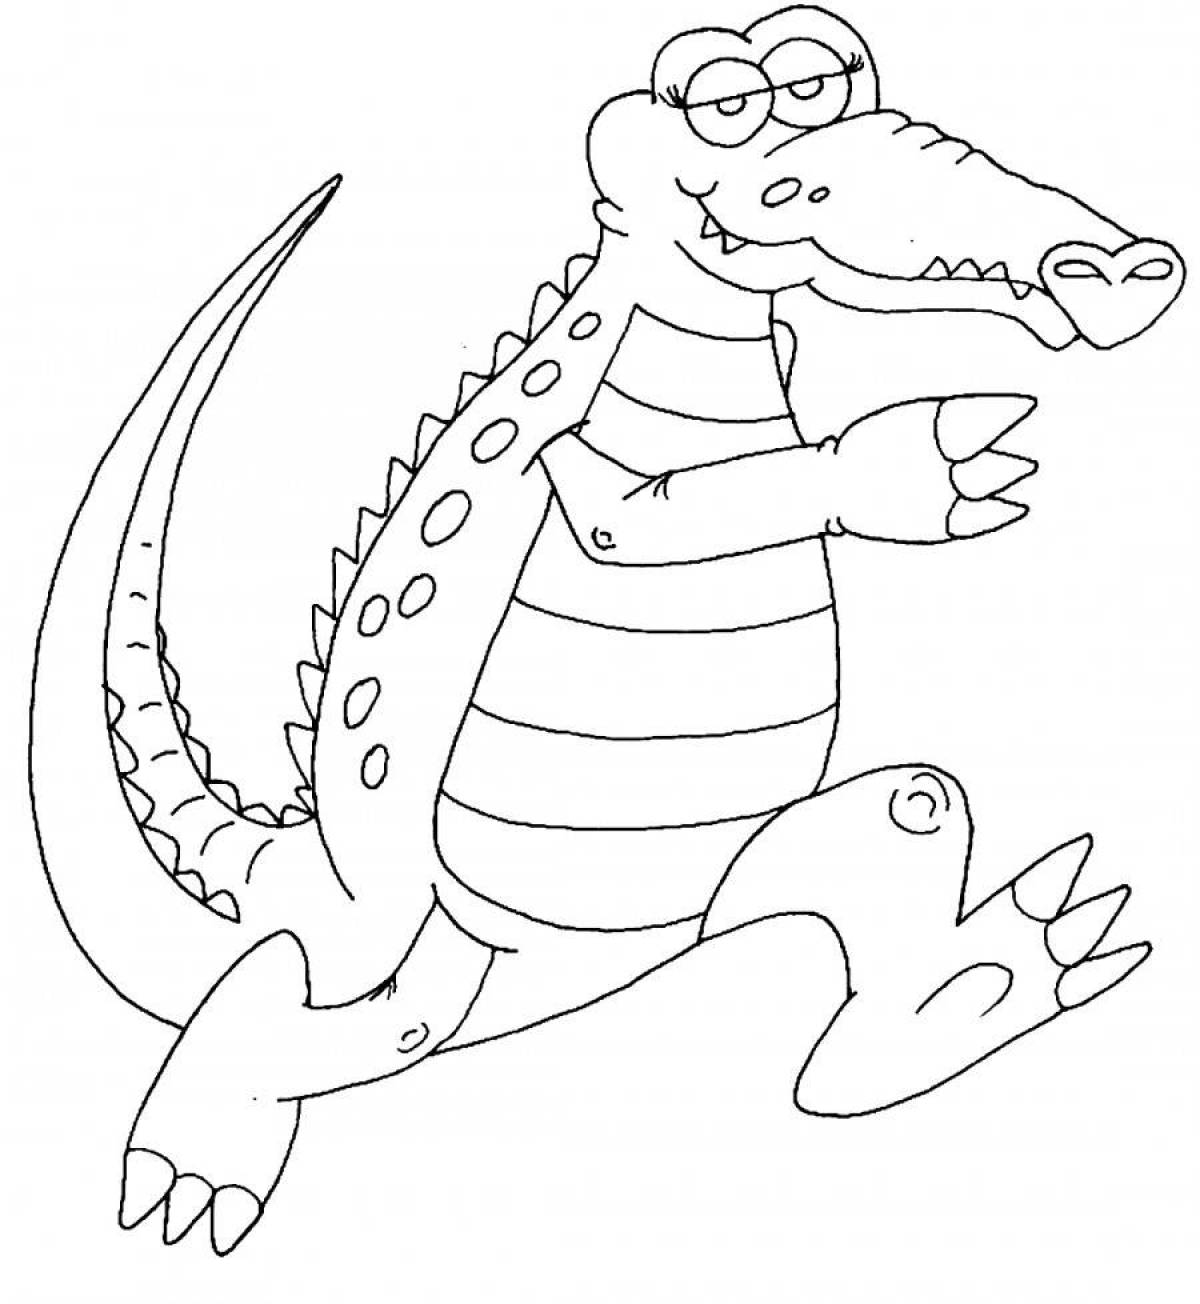 Красочная раскраска крокодил для детей